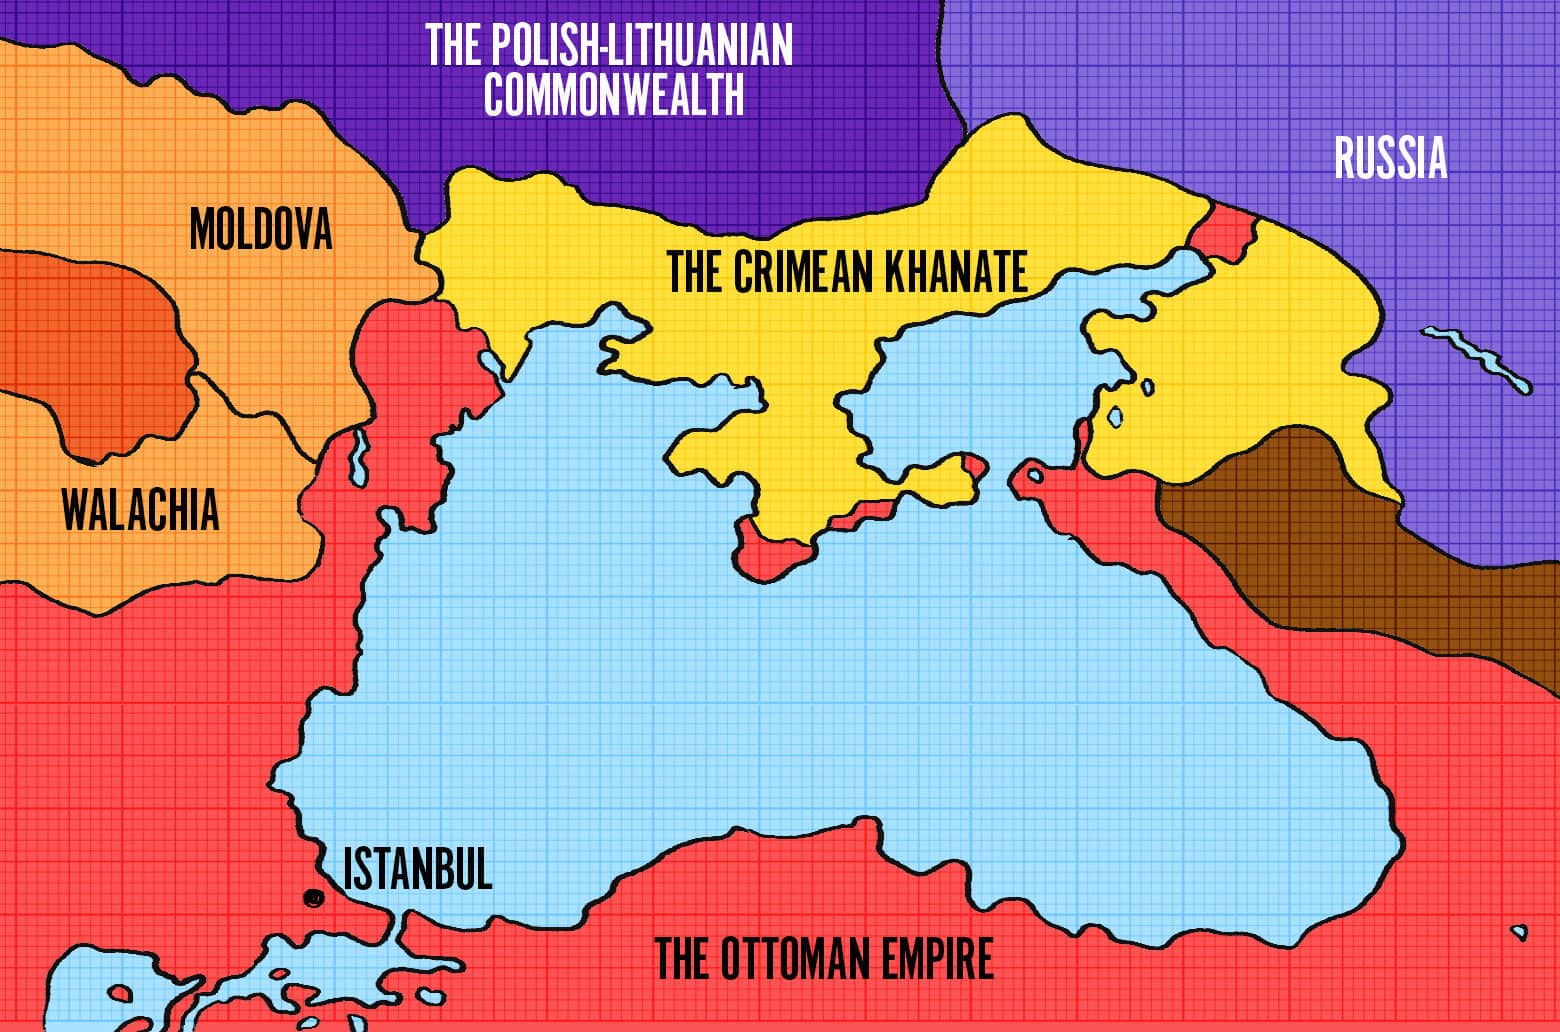 Crimean Khanate